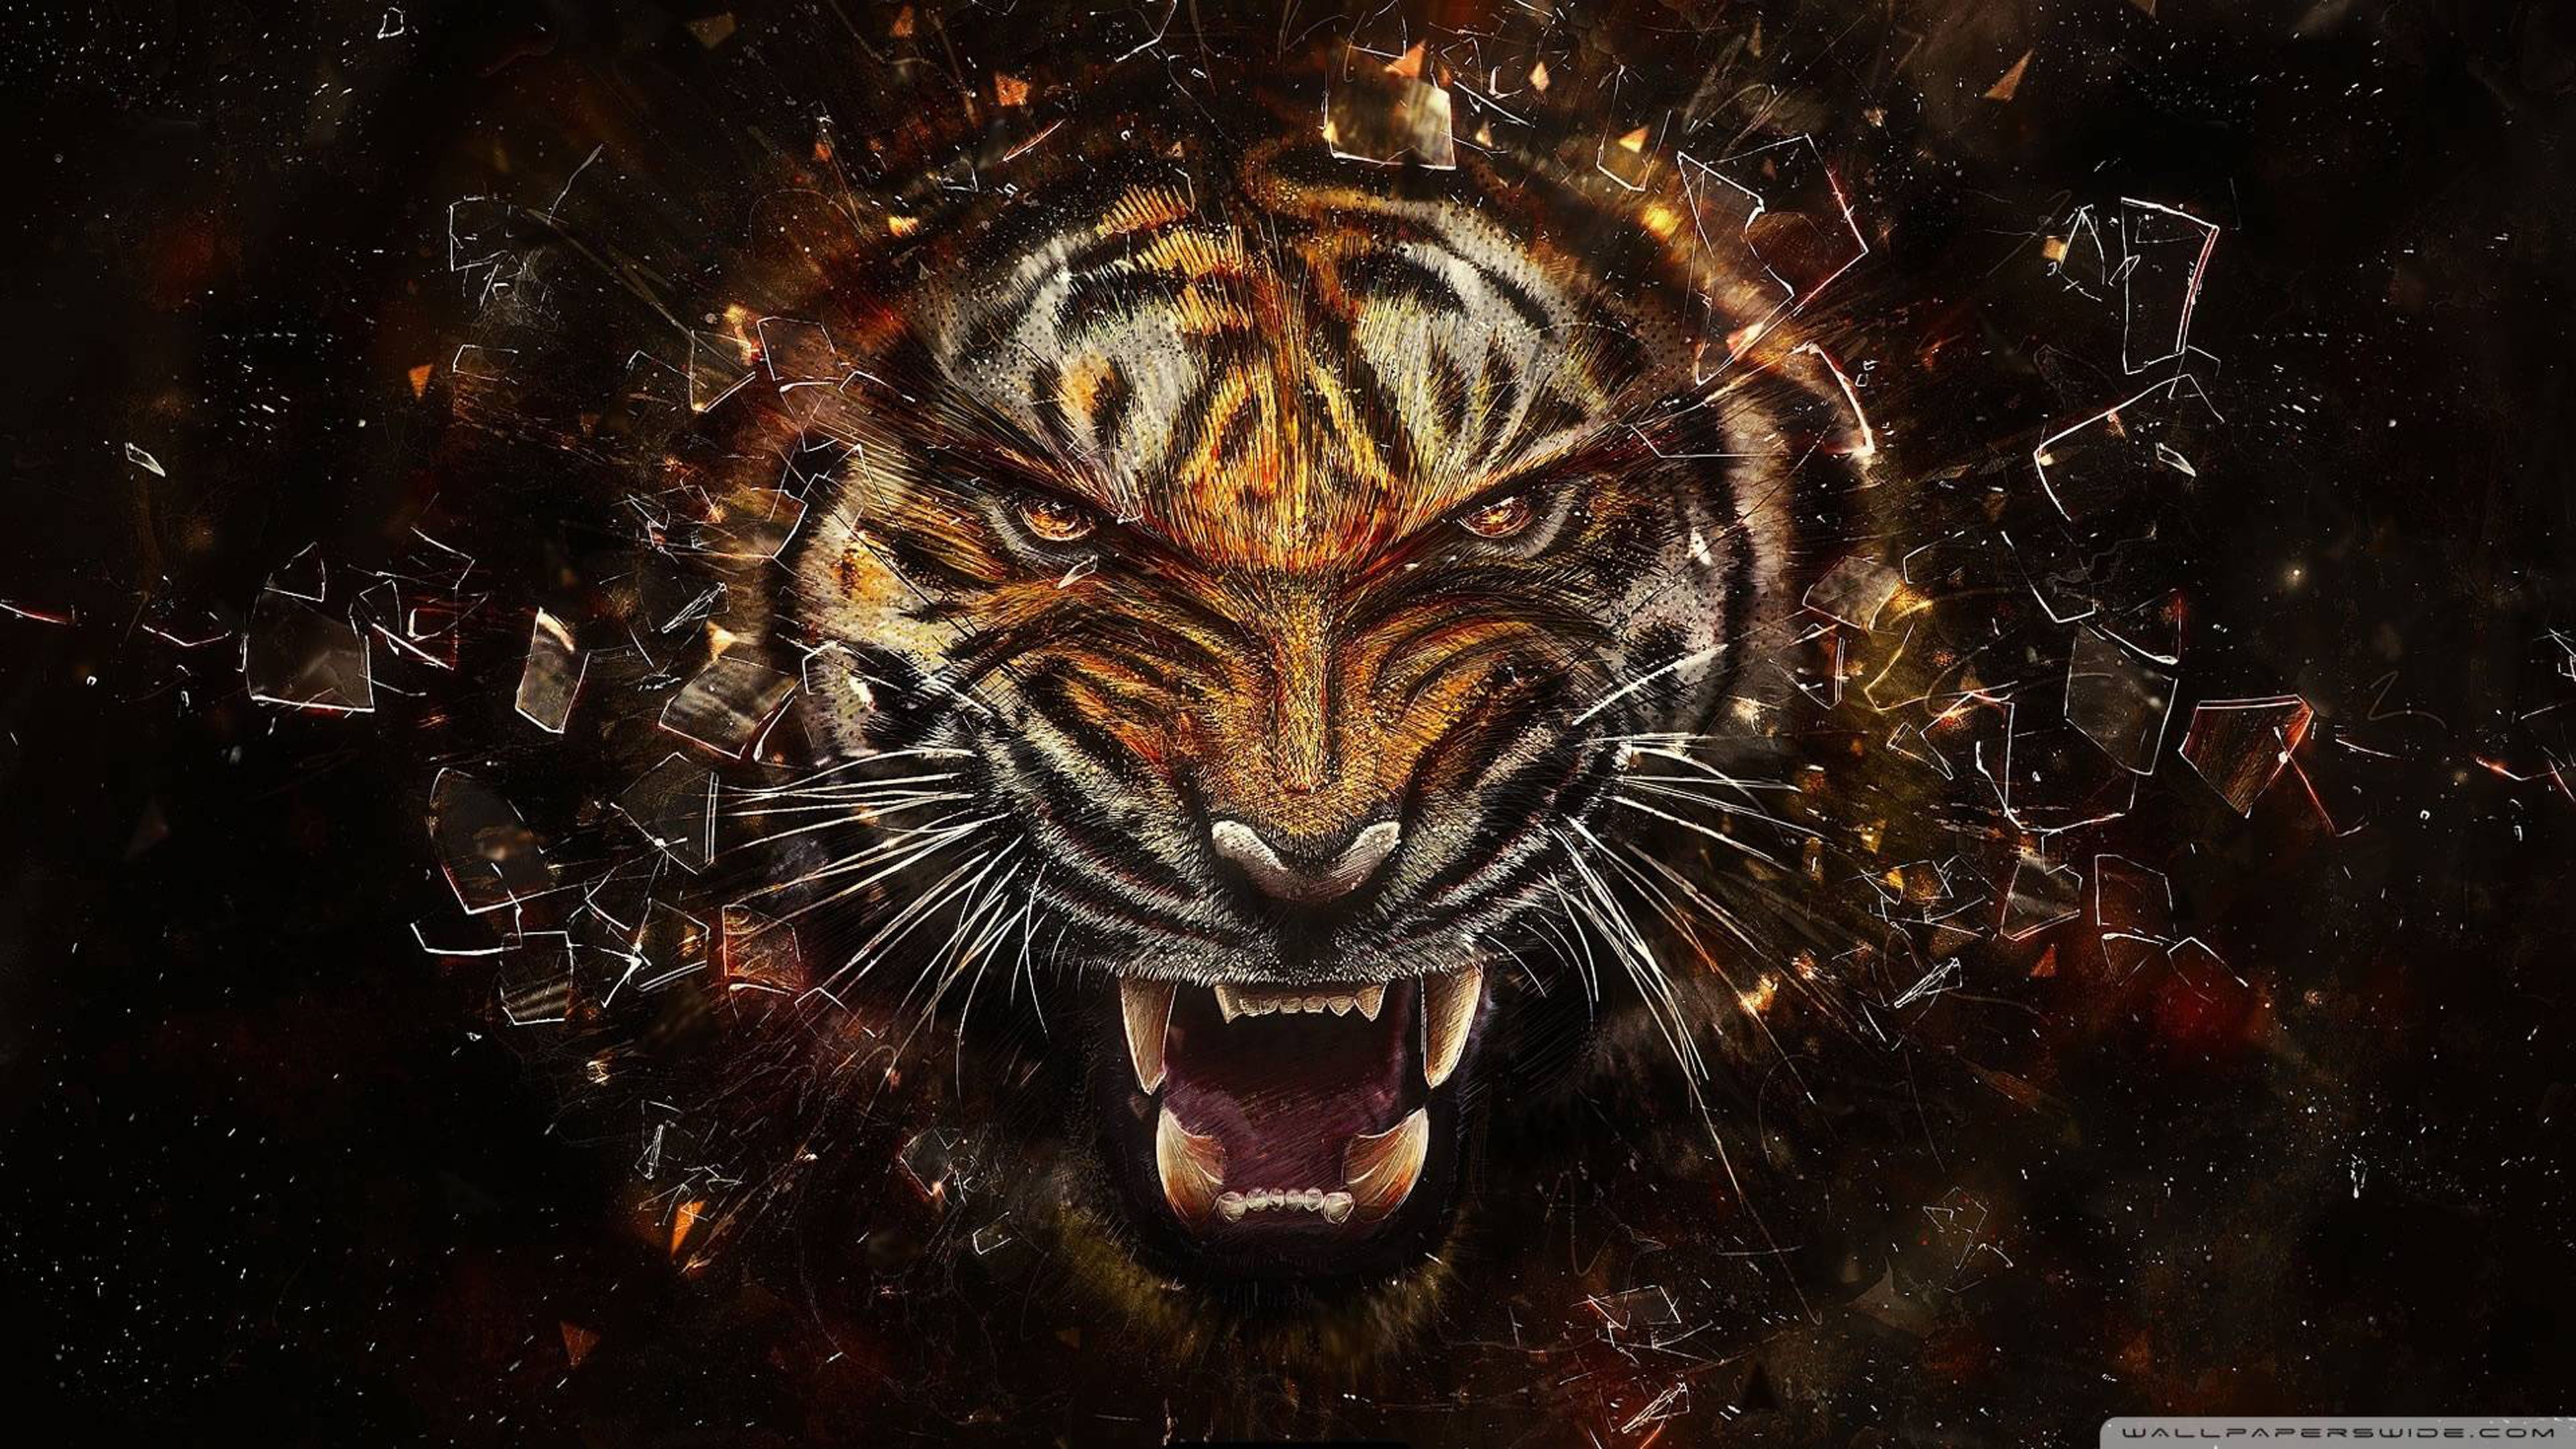 Roaring tiger ultra HD 4k wallpaper. Abstract. Ultra